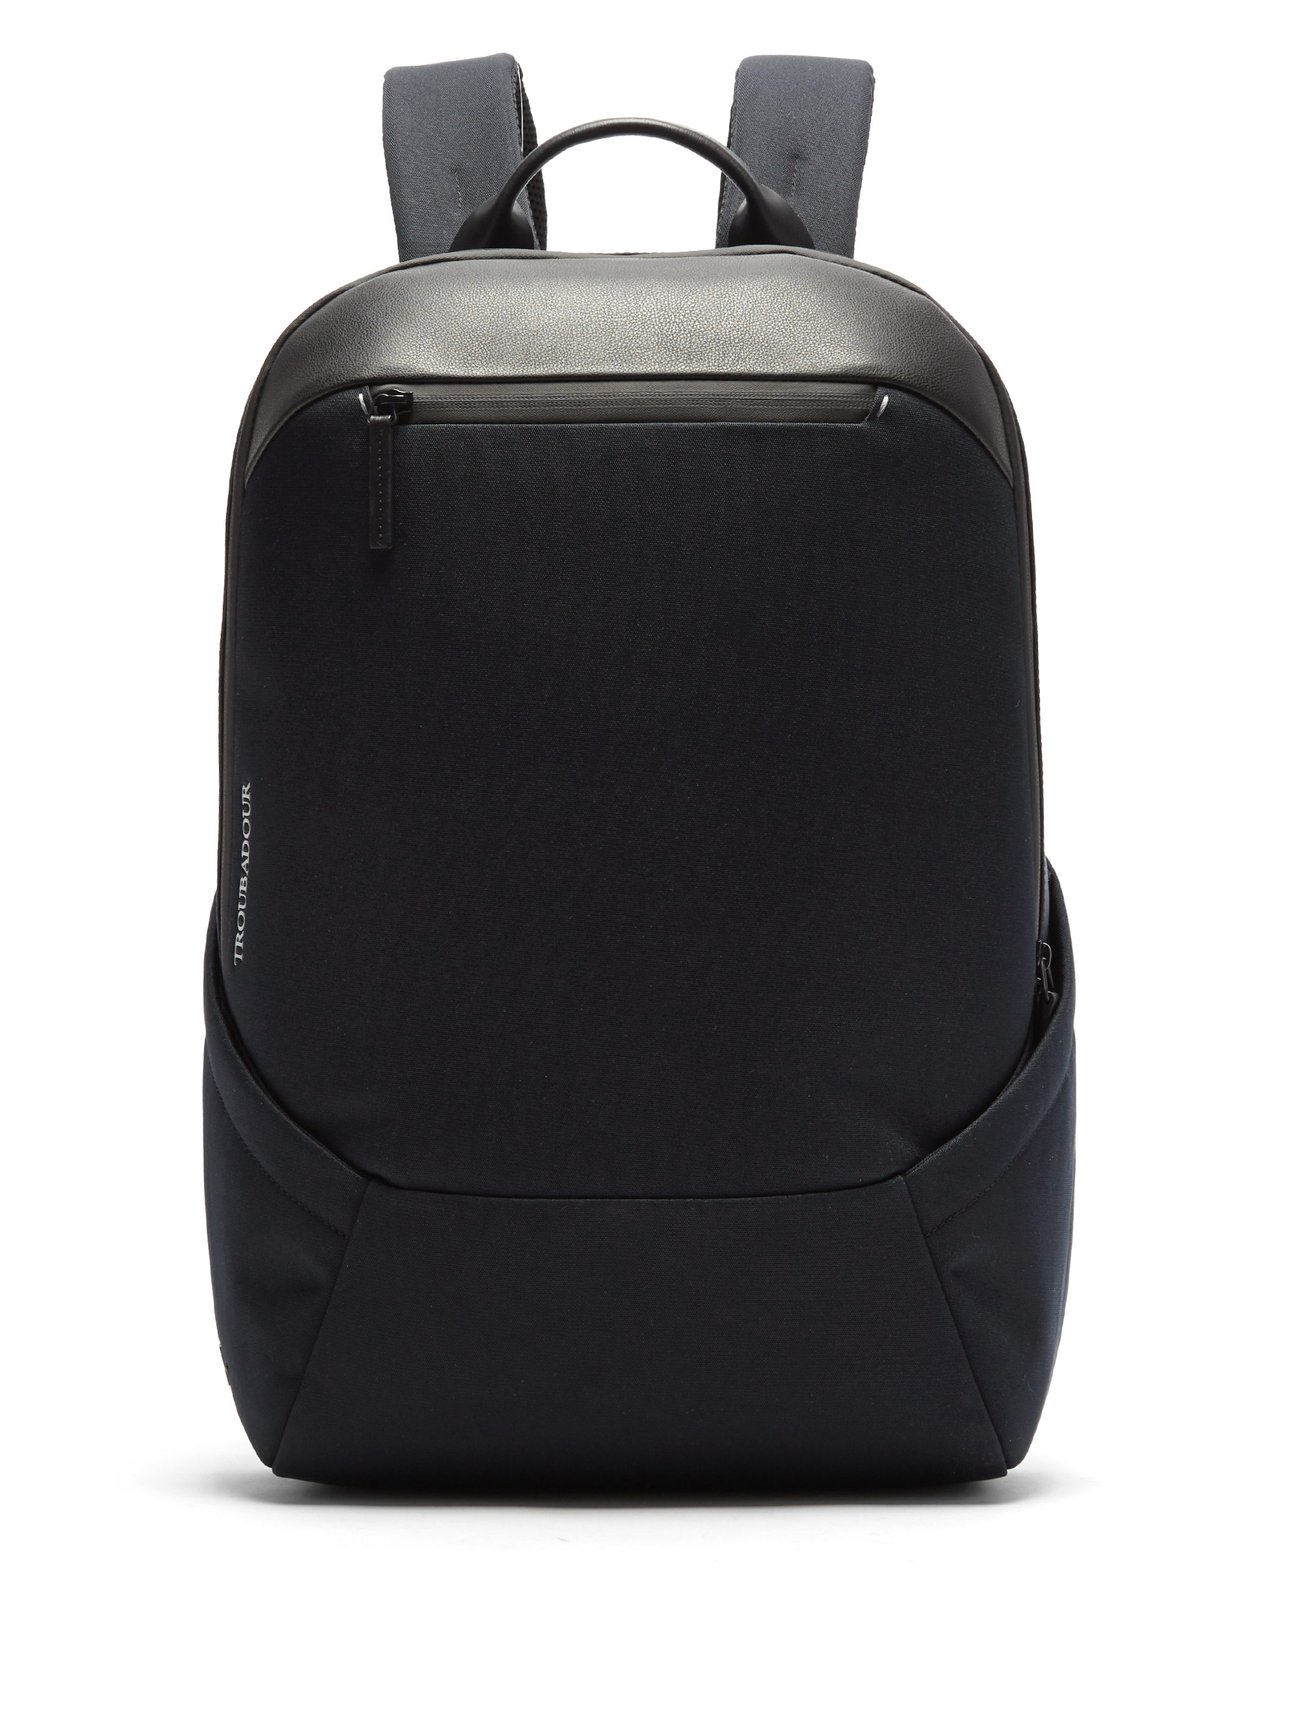 Apex waterproof recycled-fibre backpack